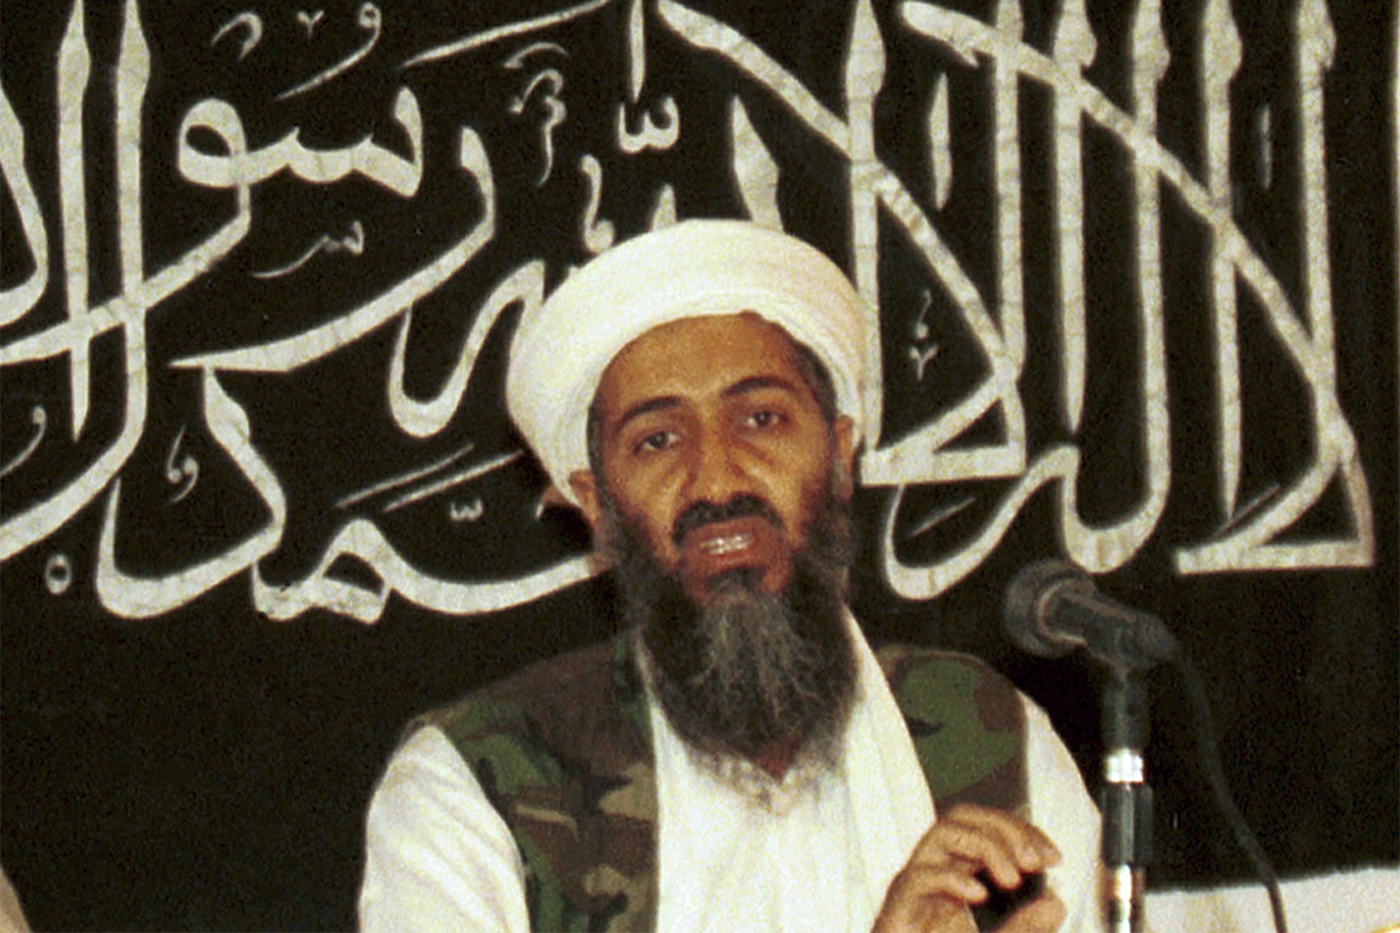 Bought Osama bin Laden's Casio : r/WatchesCirclejerk